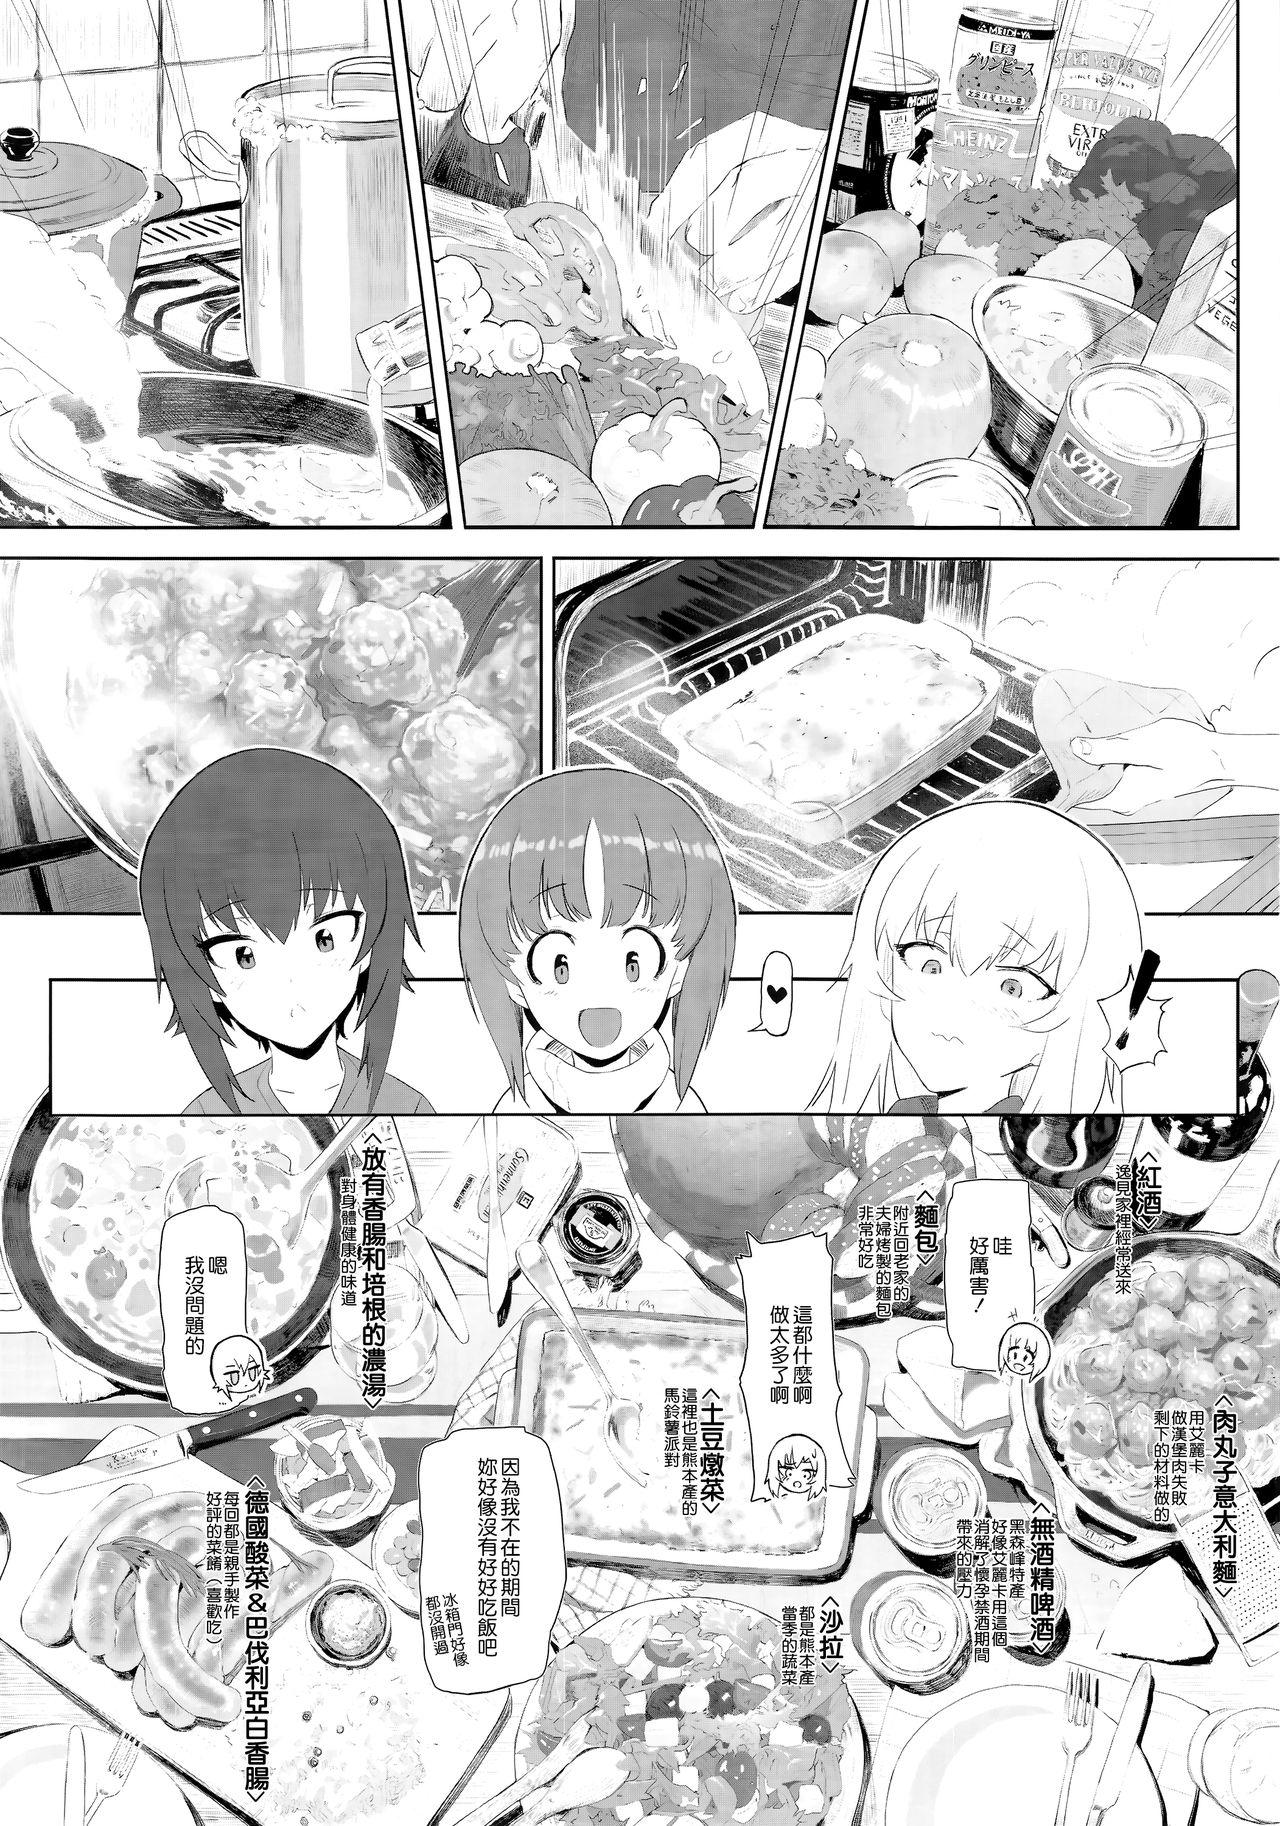 Safada ERIKA Vol. 1-3 - Girls und panzer Special Locations - Page 9